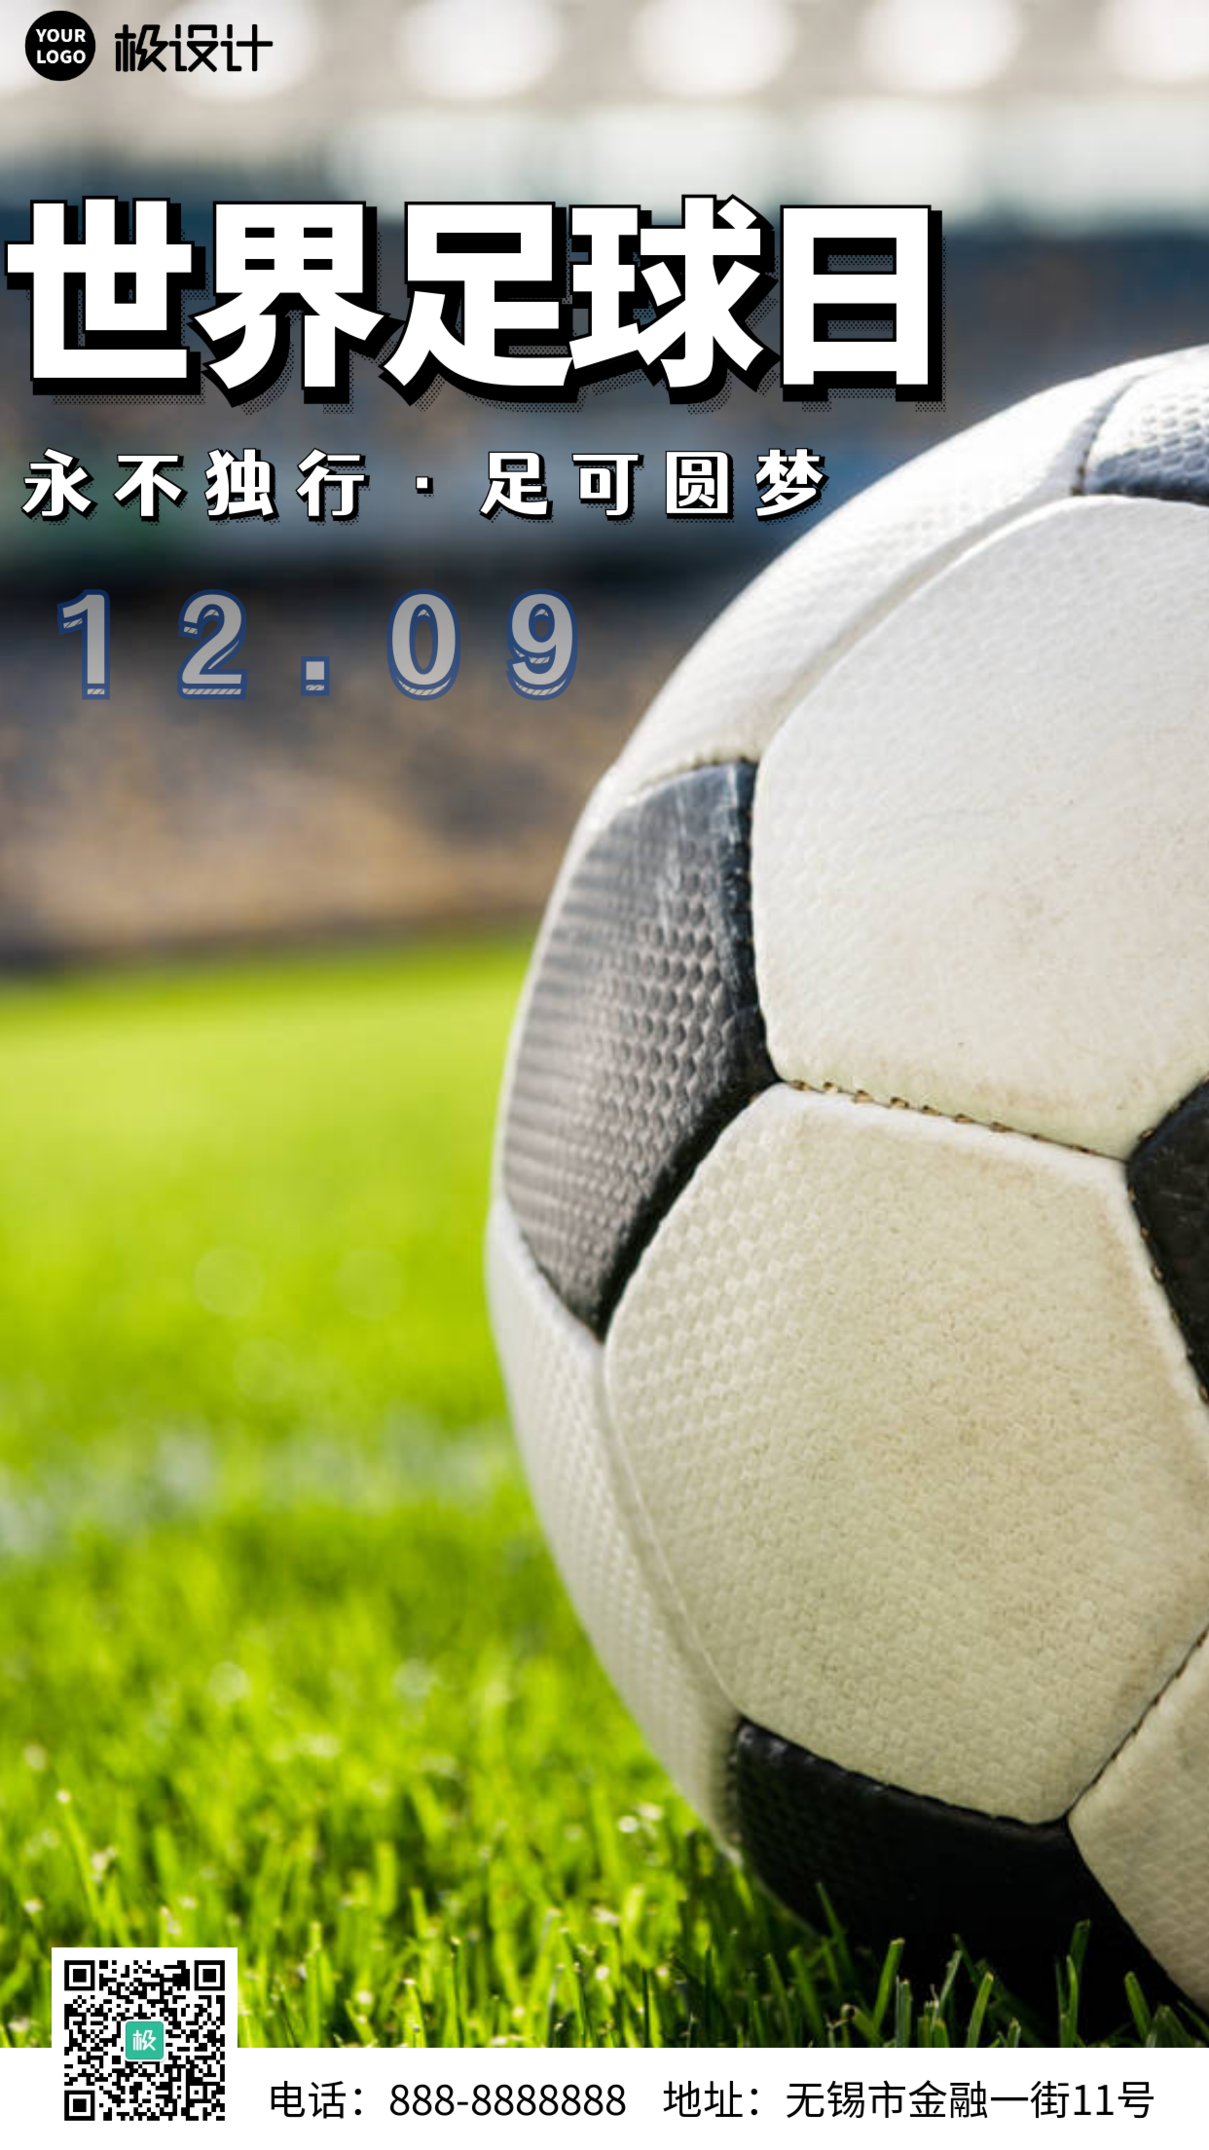 简约大气摄影风12.9世界足球日宣传手机营销海报